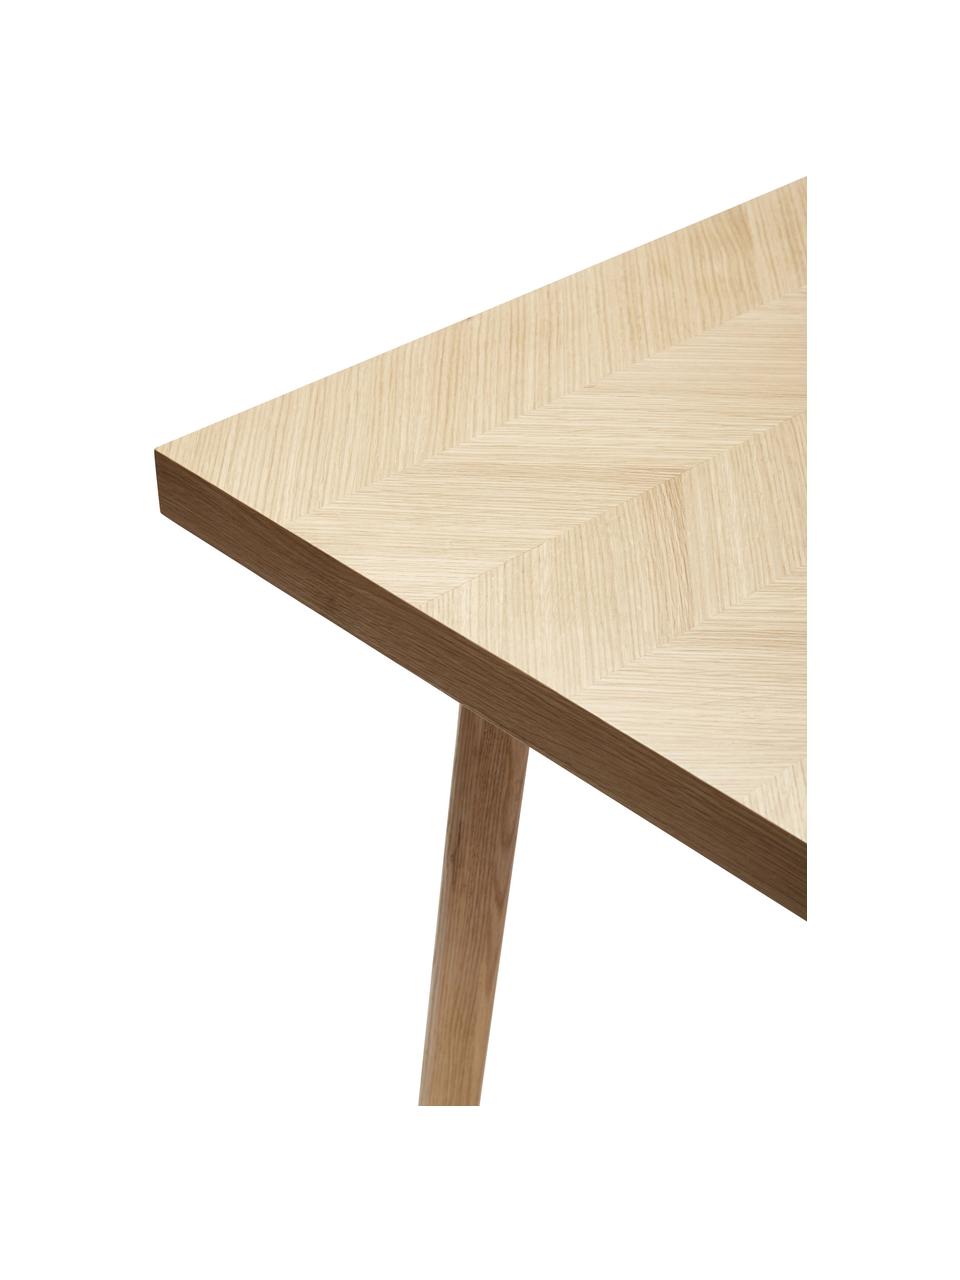 Jídelní stůl se vzorem rybí kosti Herringbone, 200 x 100 cm, Dubové dřevo, certifikace FSC, Dubové dřevo, Š 200 cm, H 100 cm